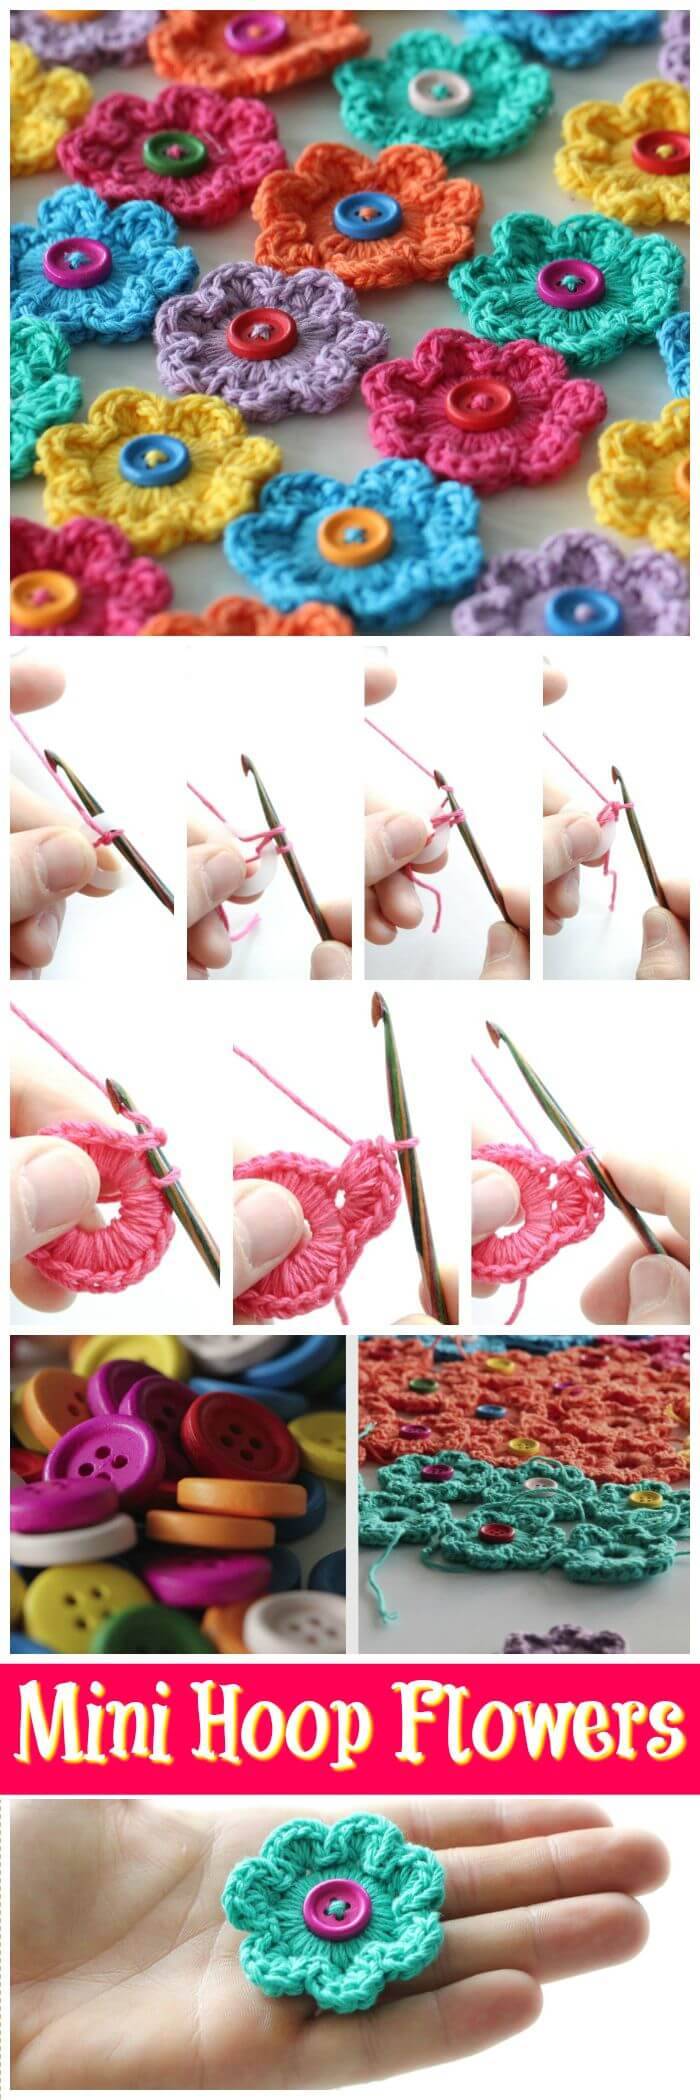 DIY Mini Hoop Flowers Free Crochet Pattern, Free crochet flower patterns for crochet lovers! DIY projects about how to crochet flowers!